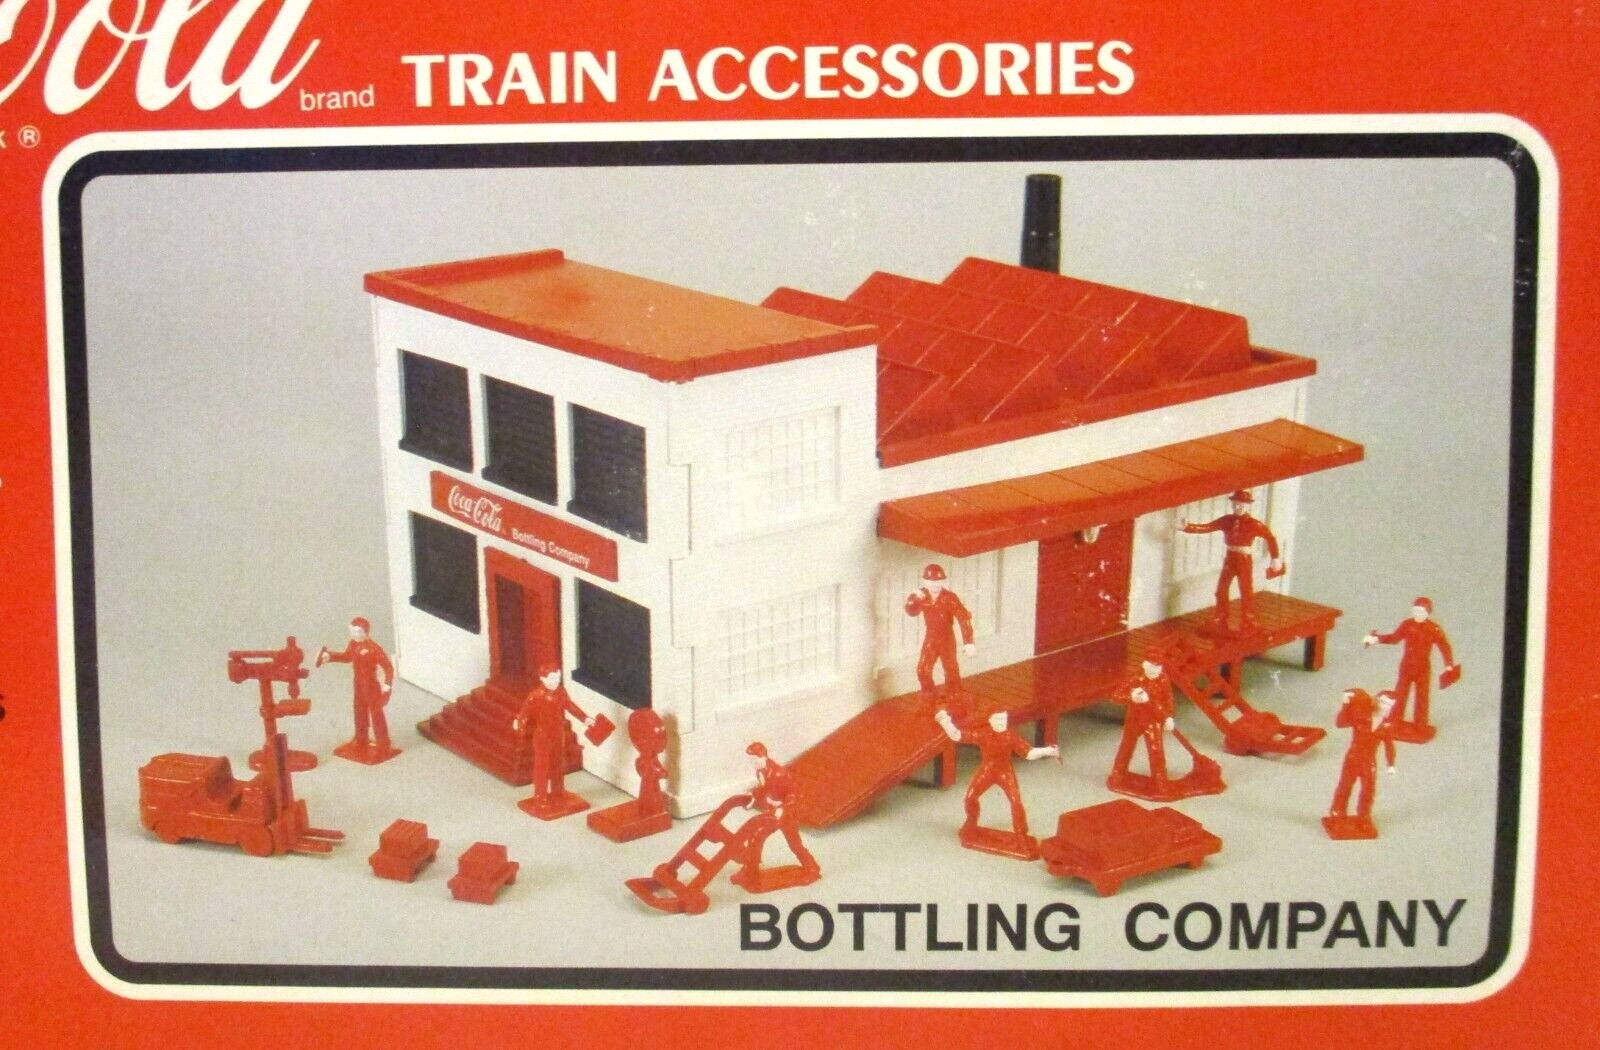 Coca-cola TTAX Train Accessories O Scale Bottling Company Model K-40111  Suburban 